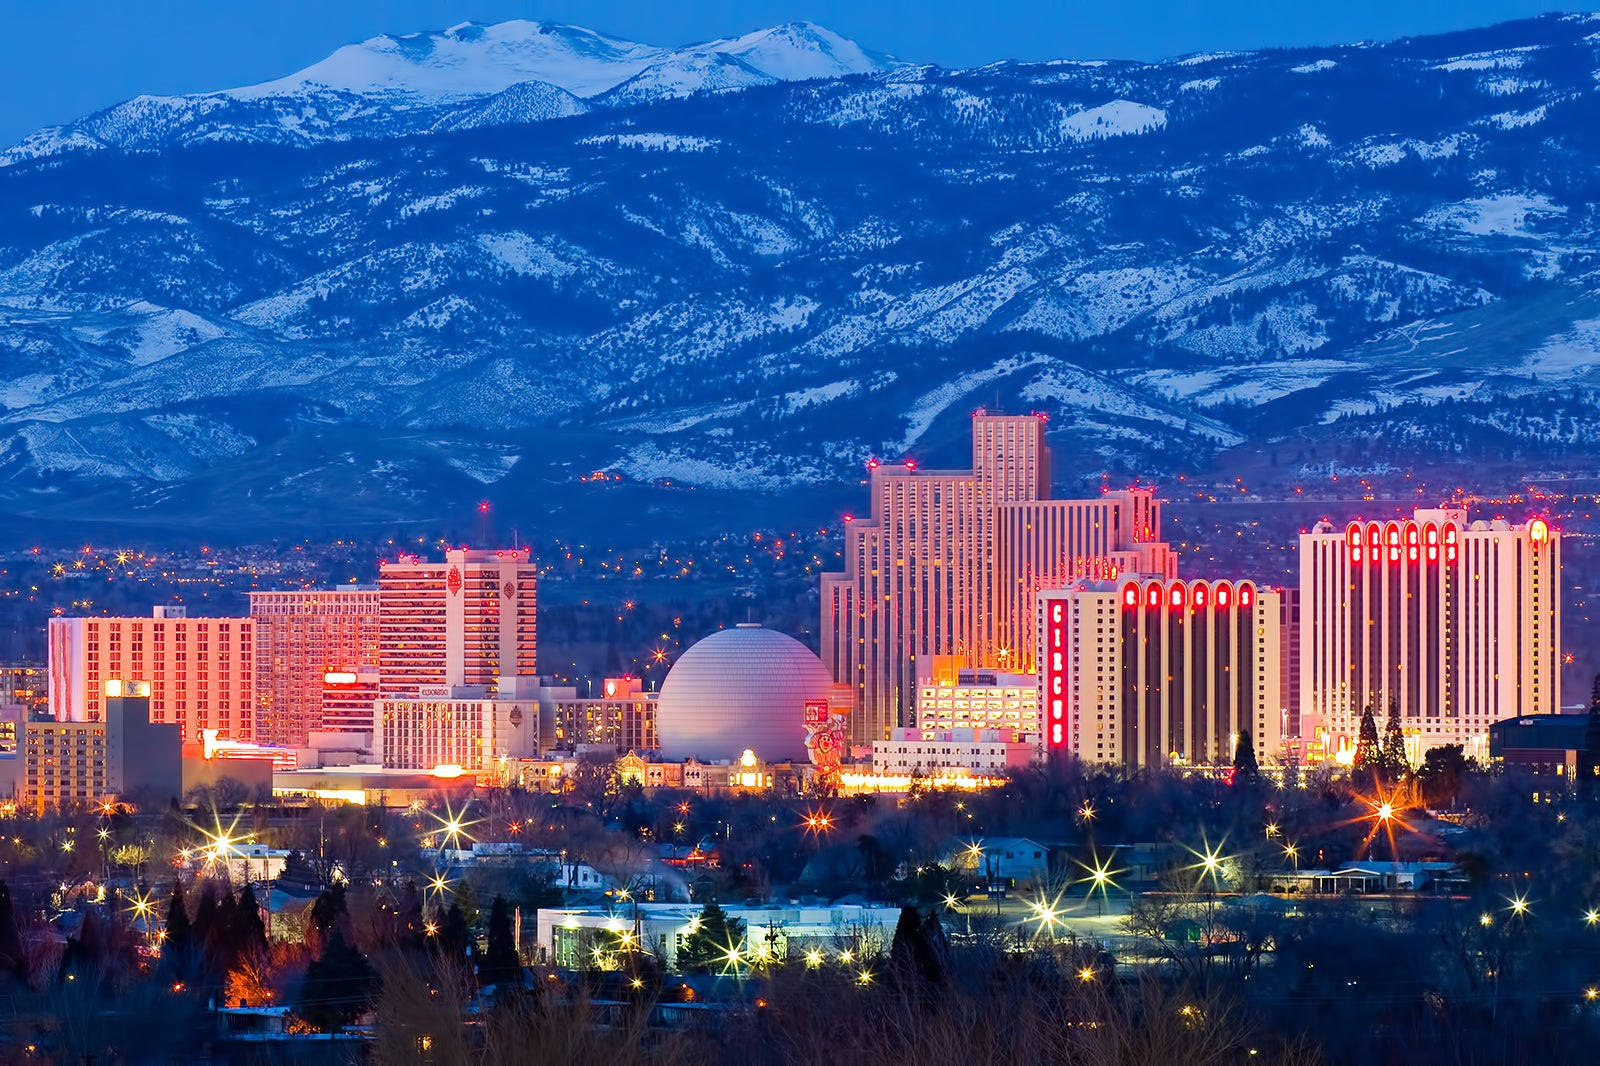 The Vibrant Cityscape Of Reno, Nevada